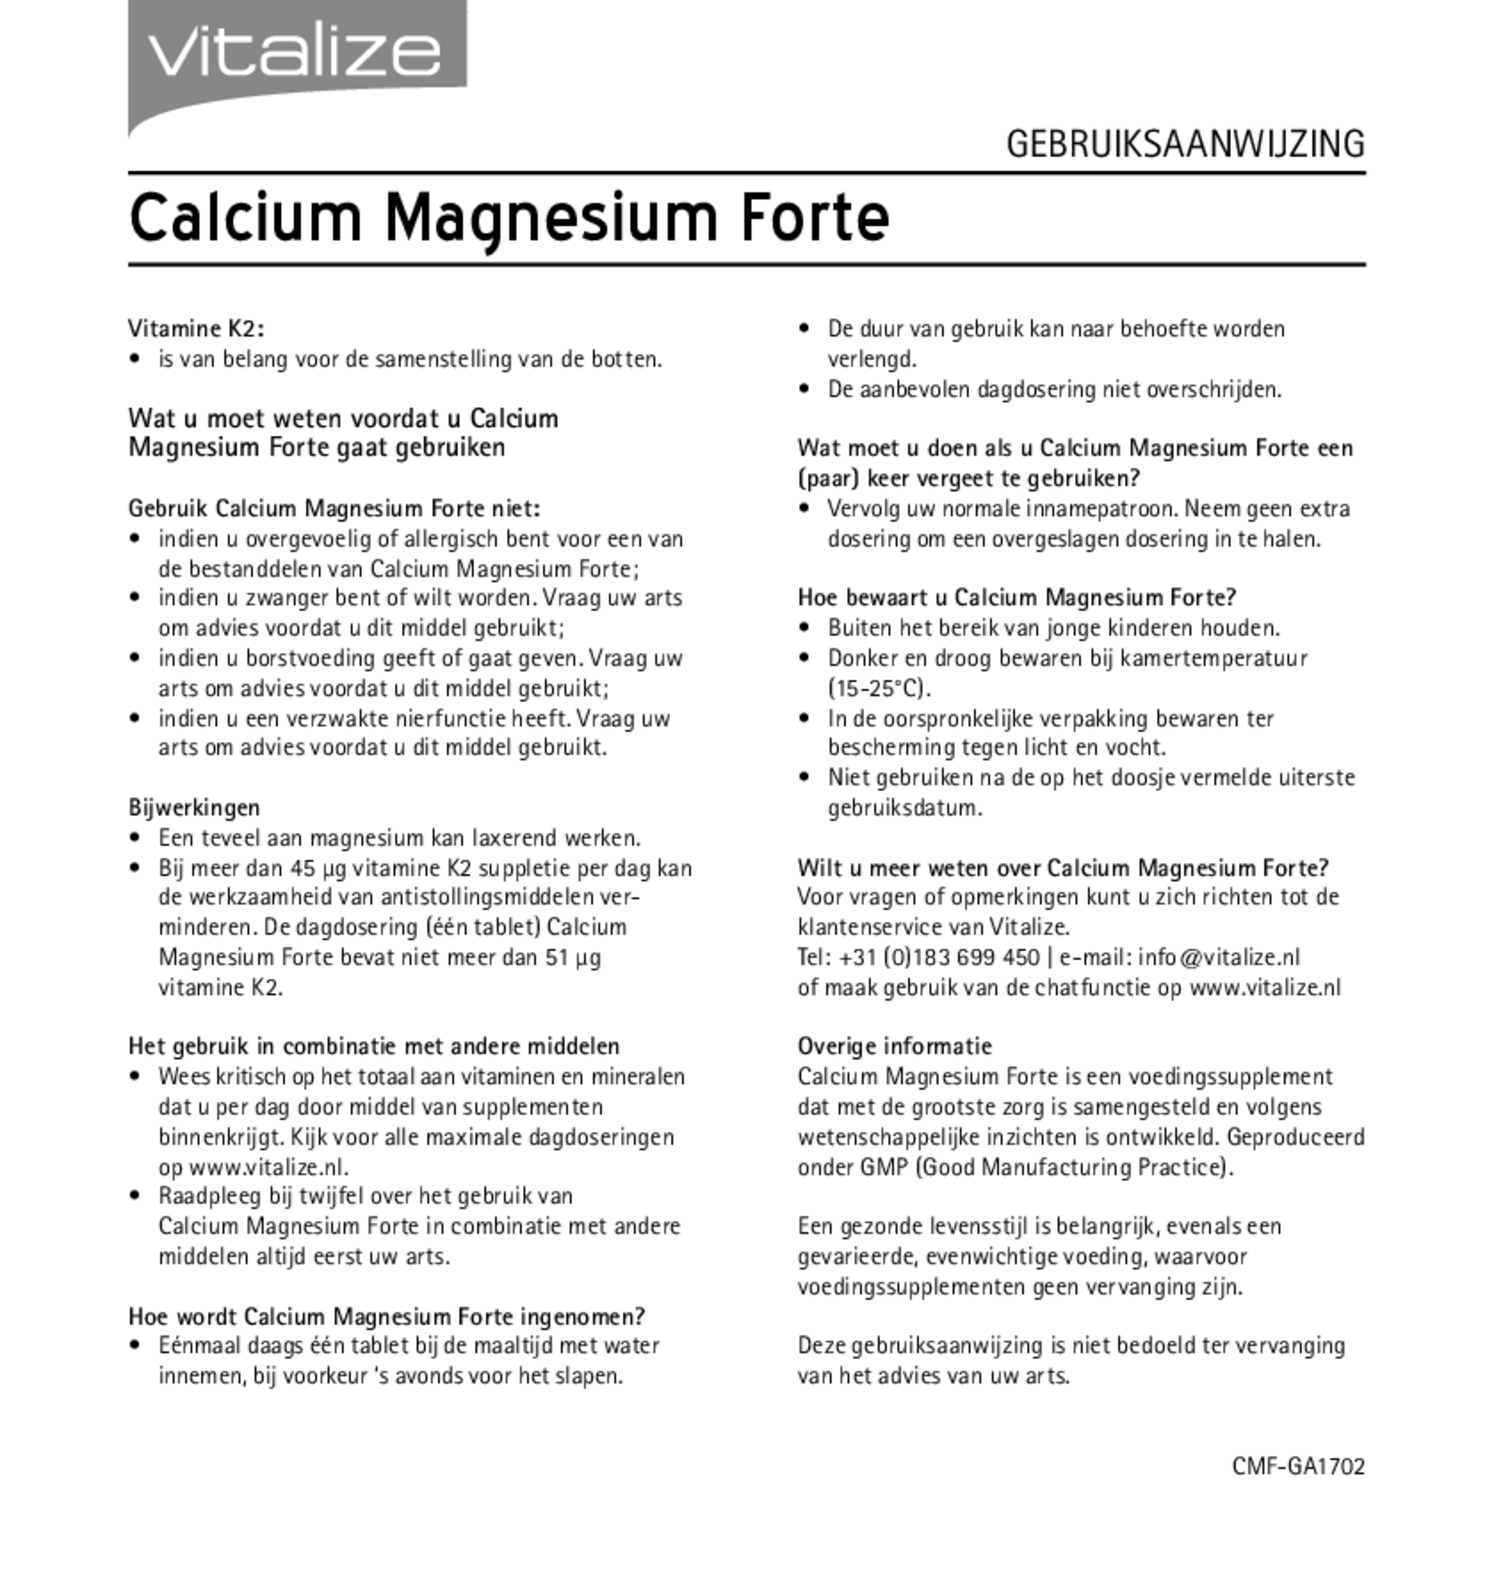 Calcium Magnesium Forte Tabletten Voordeelverpakking afbeelding van document #2, gebruiksaanwijzing